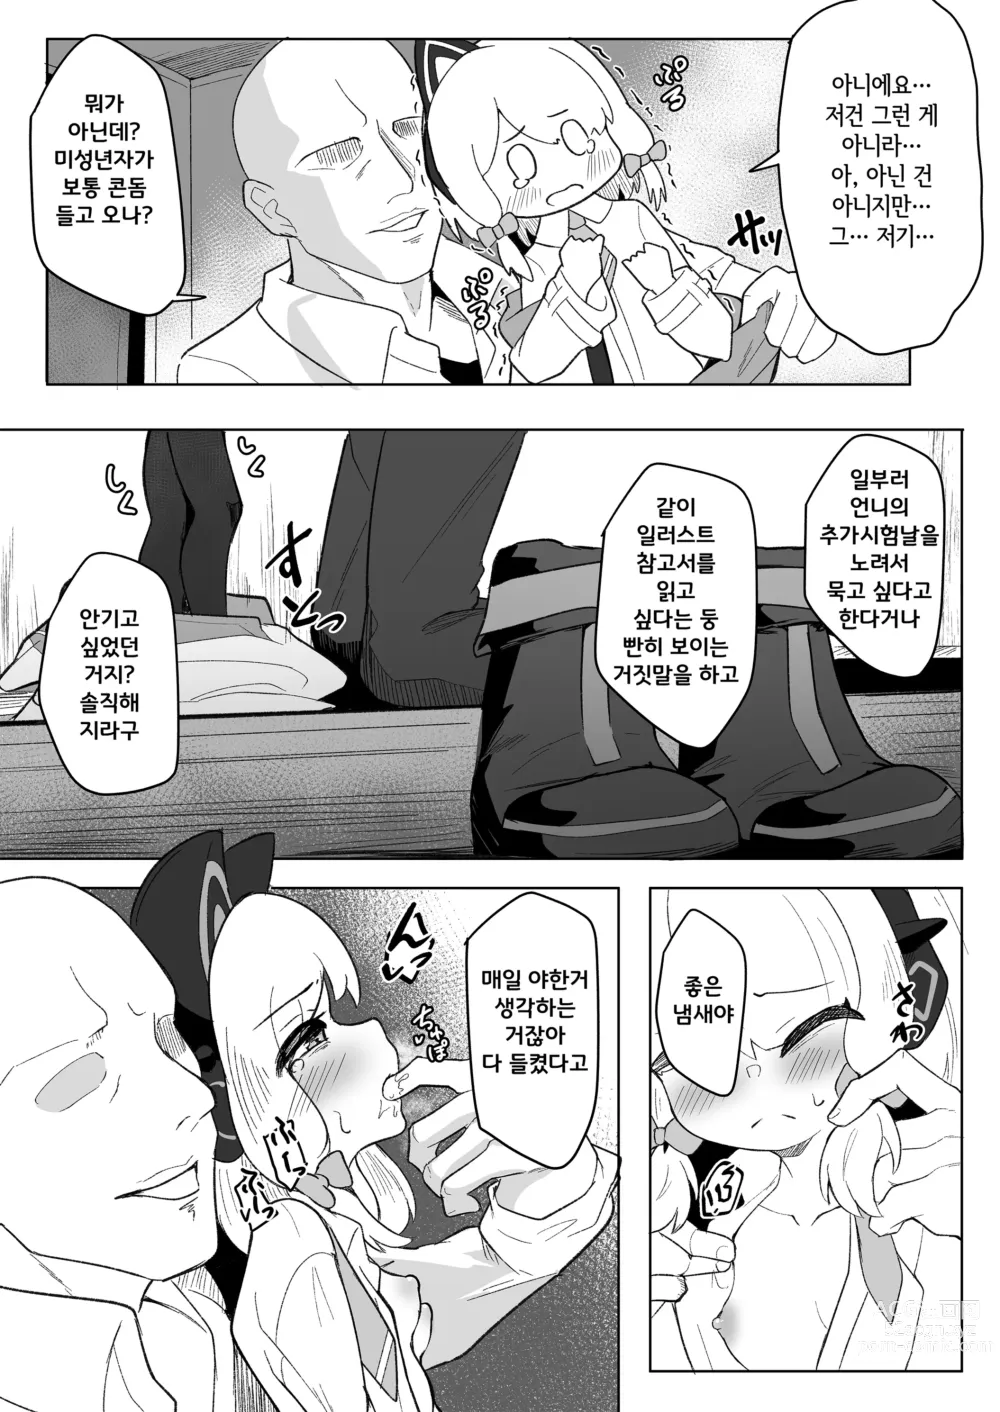 Page 9 of doujinshi 미도리가 정말 좋아하는 선생님 때문에 울게되는 책